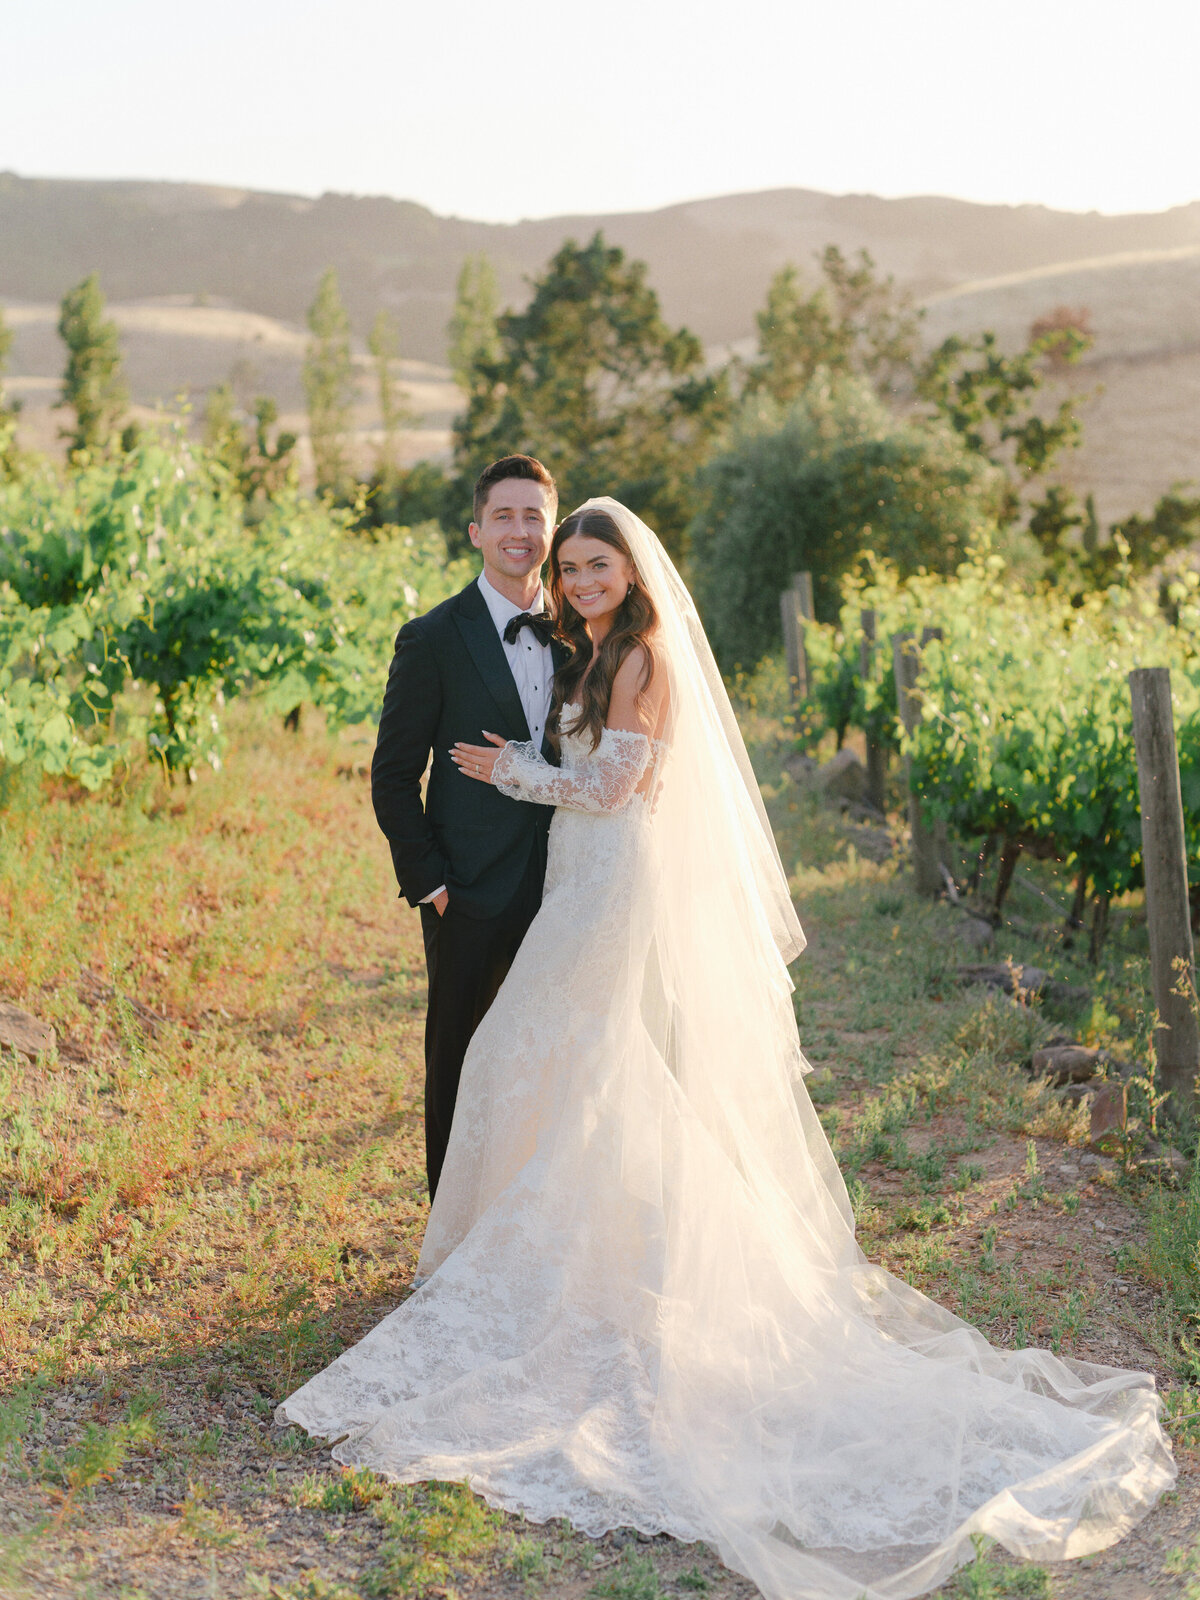 Ashley + John Viansa Sonoma Winery Wedding Cassie Valente Photography 620